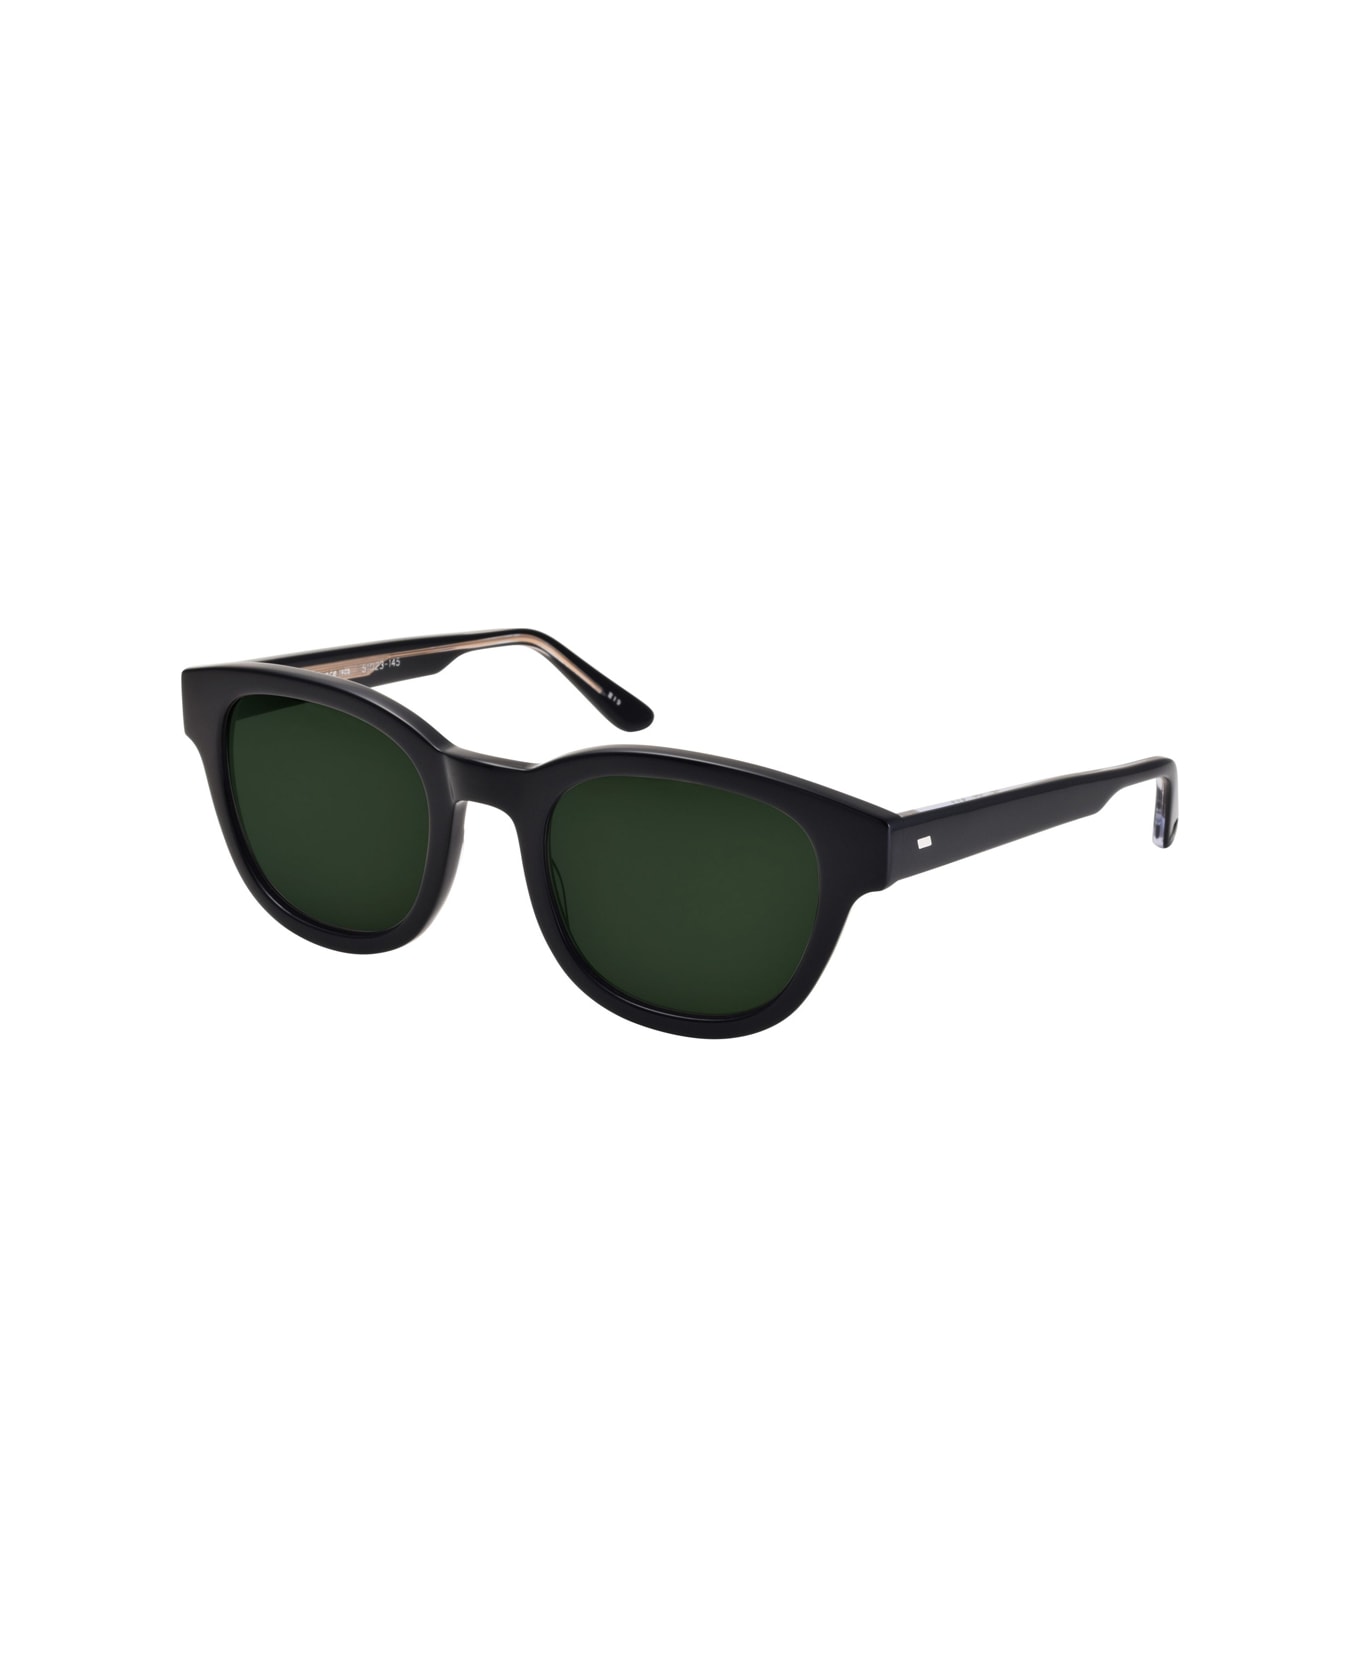 Masunaga Kk 096 S19 Sunglasses - Nero サングラス